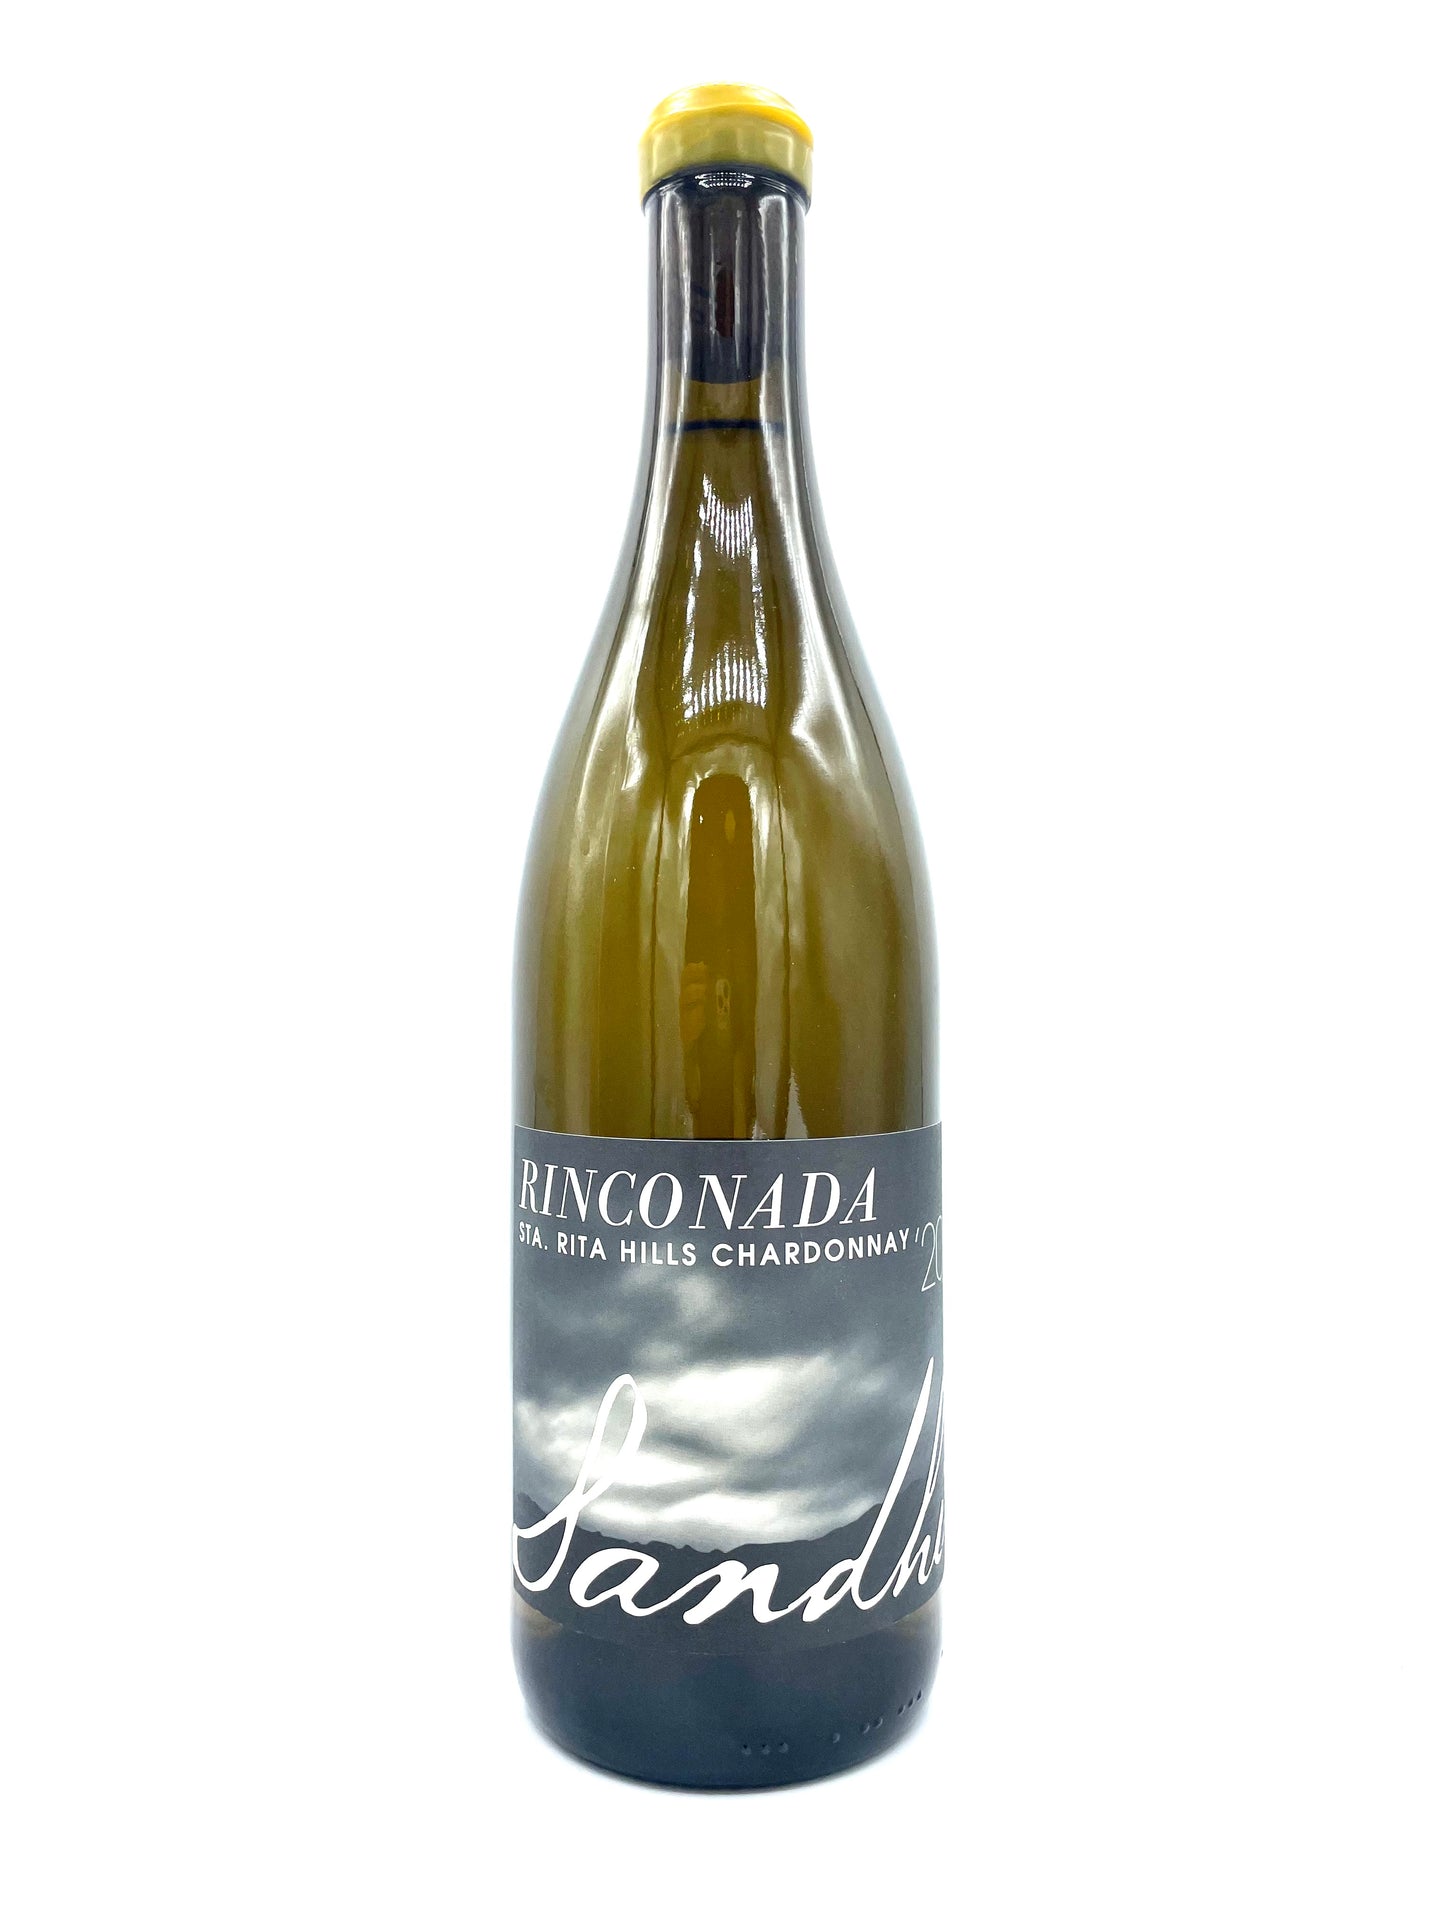 Sandhi 'La Rinconada' Chardonnay 2020